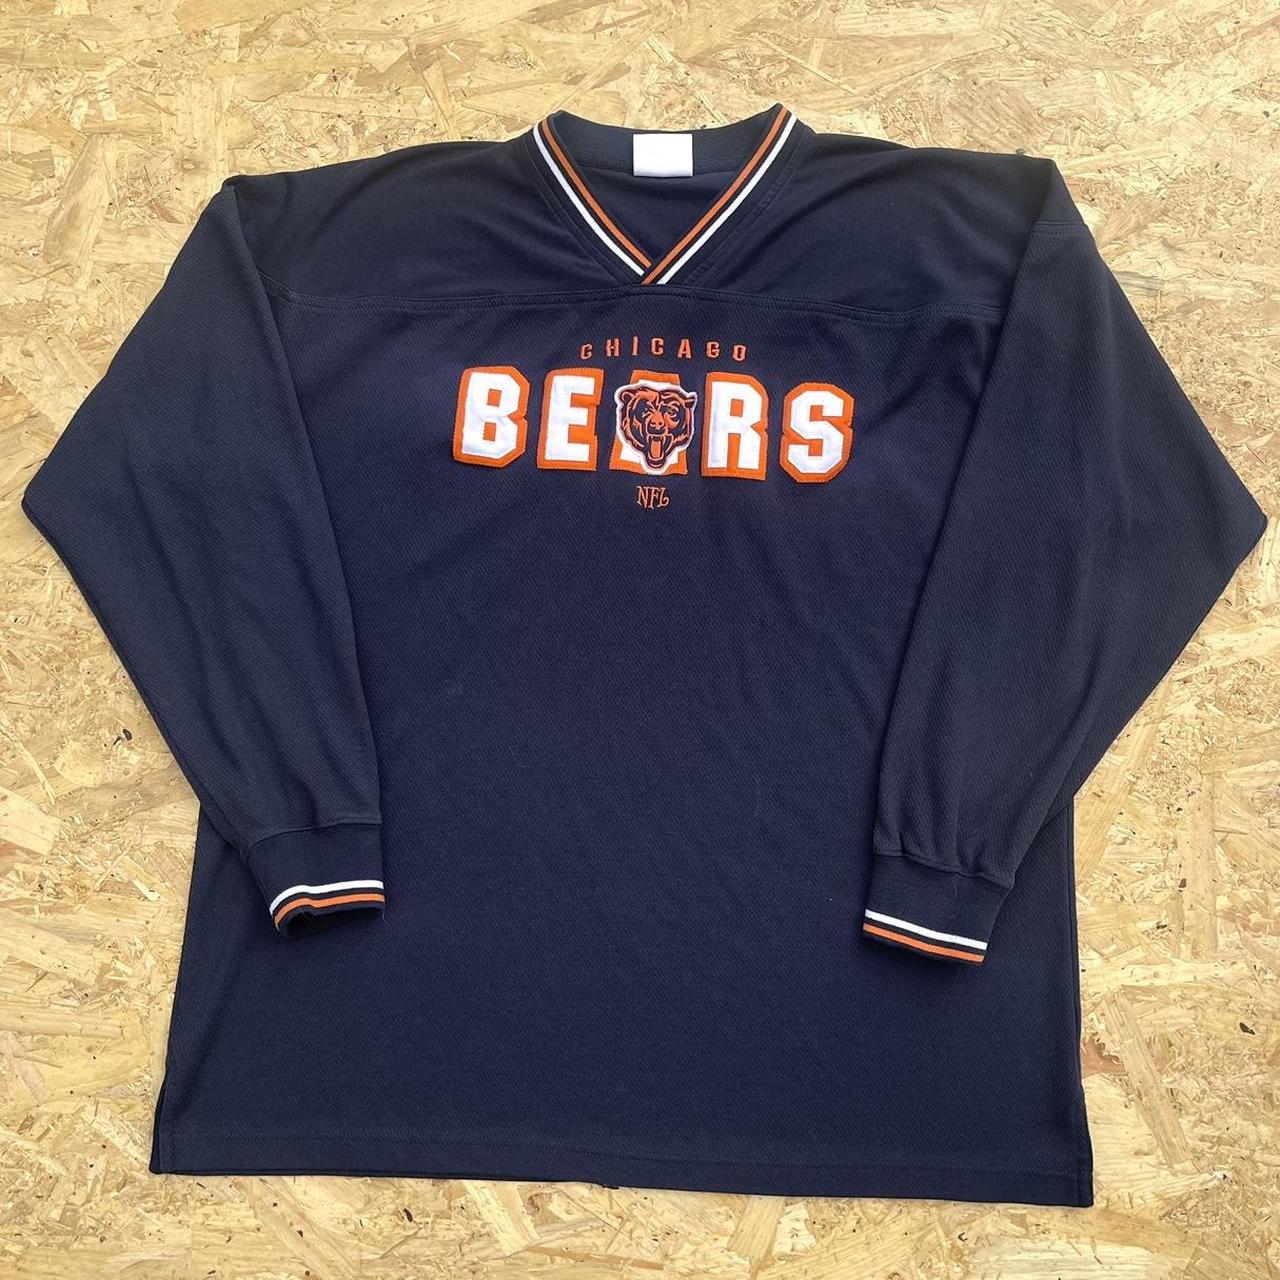 Vintage Reebok NFL x ‘Chicago Bears’ Embroidered... - Depop